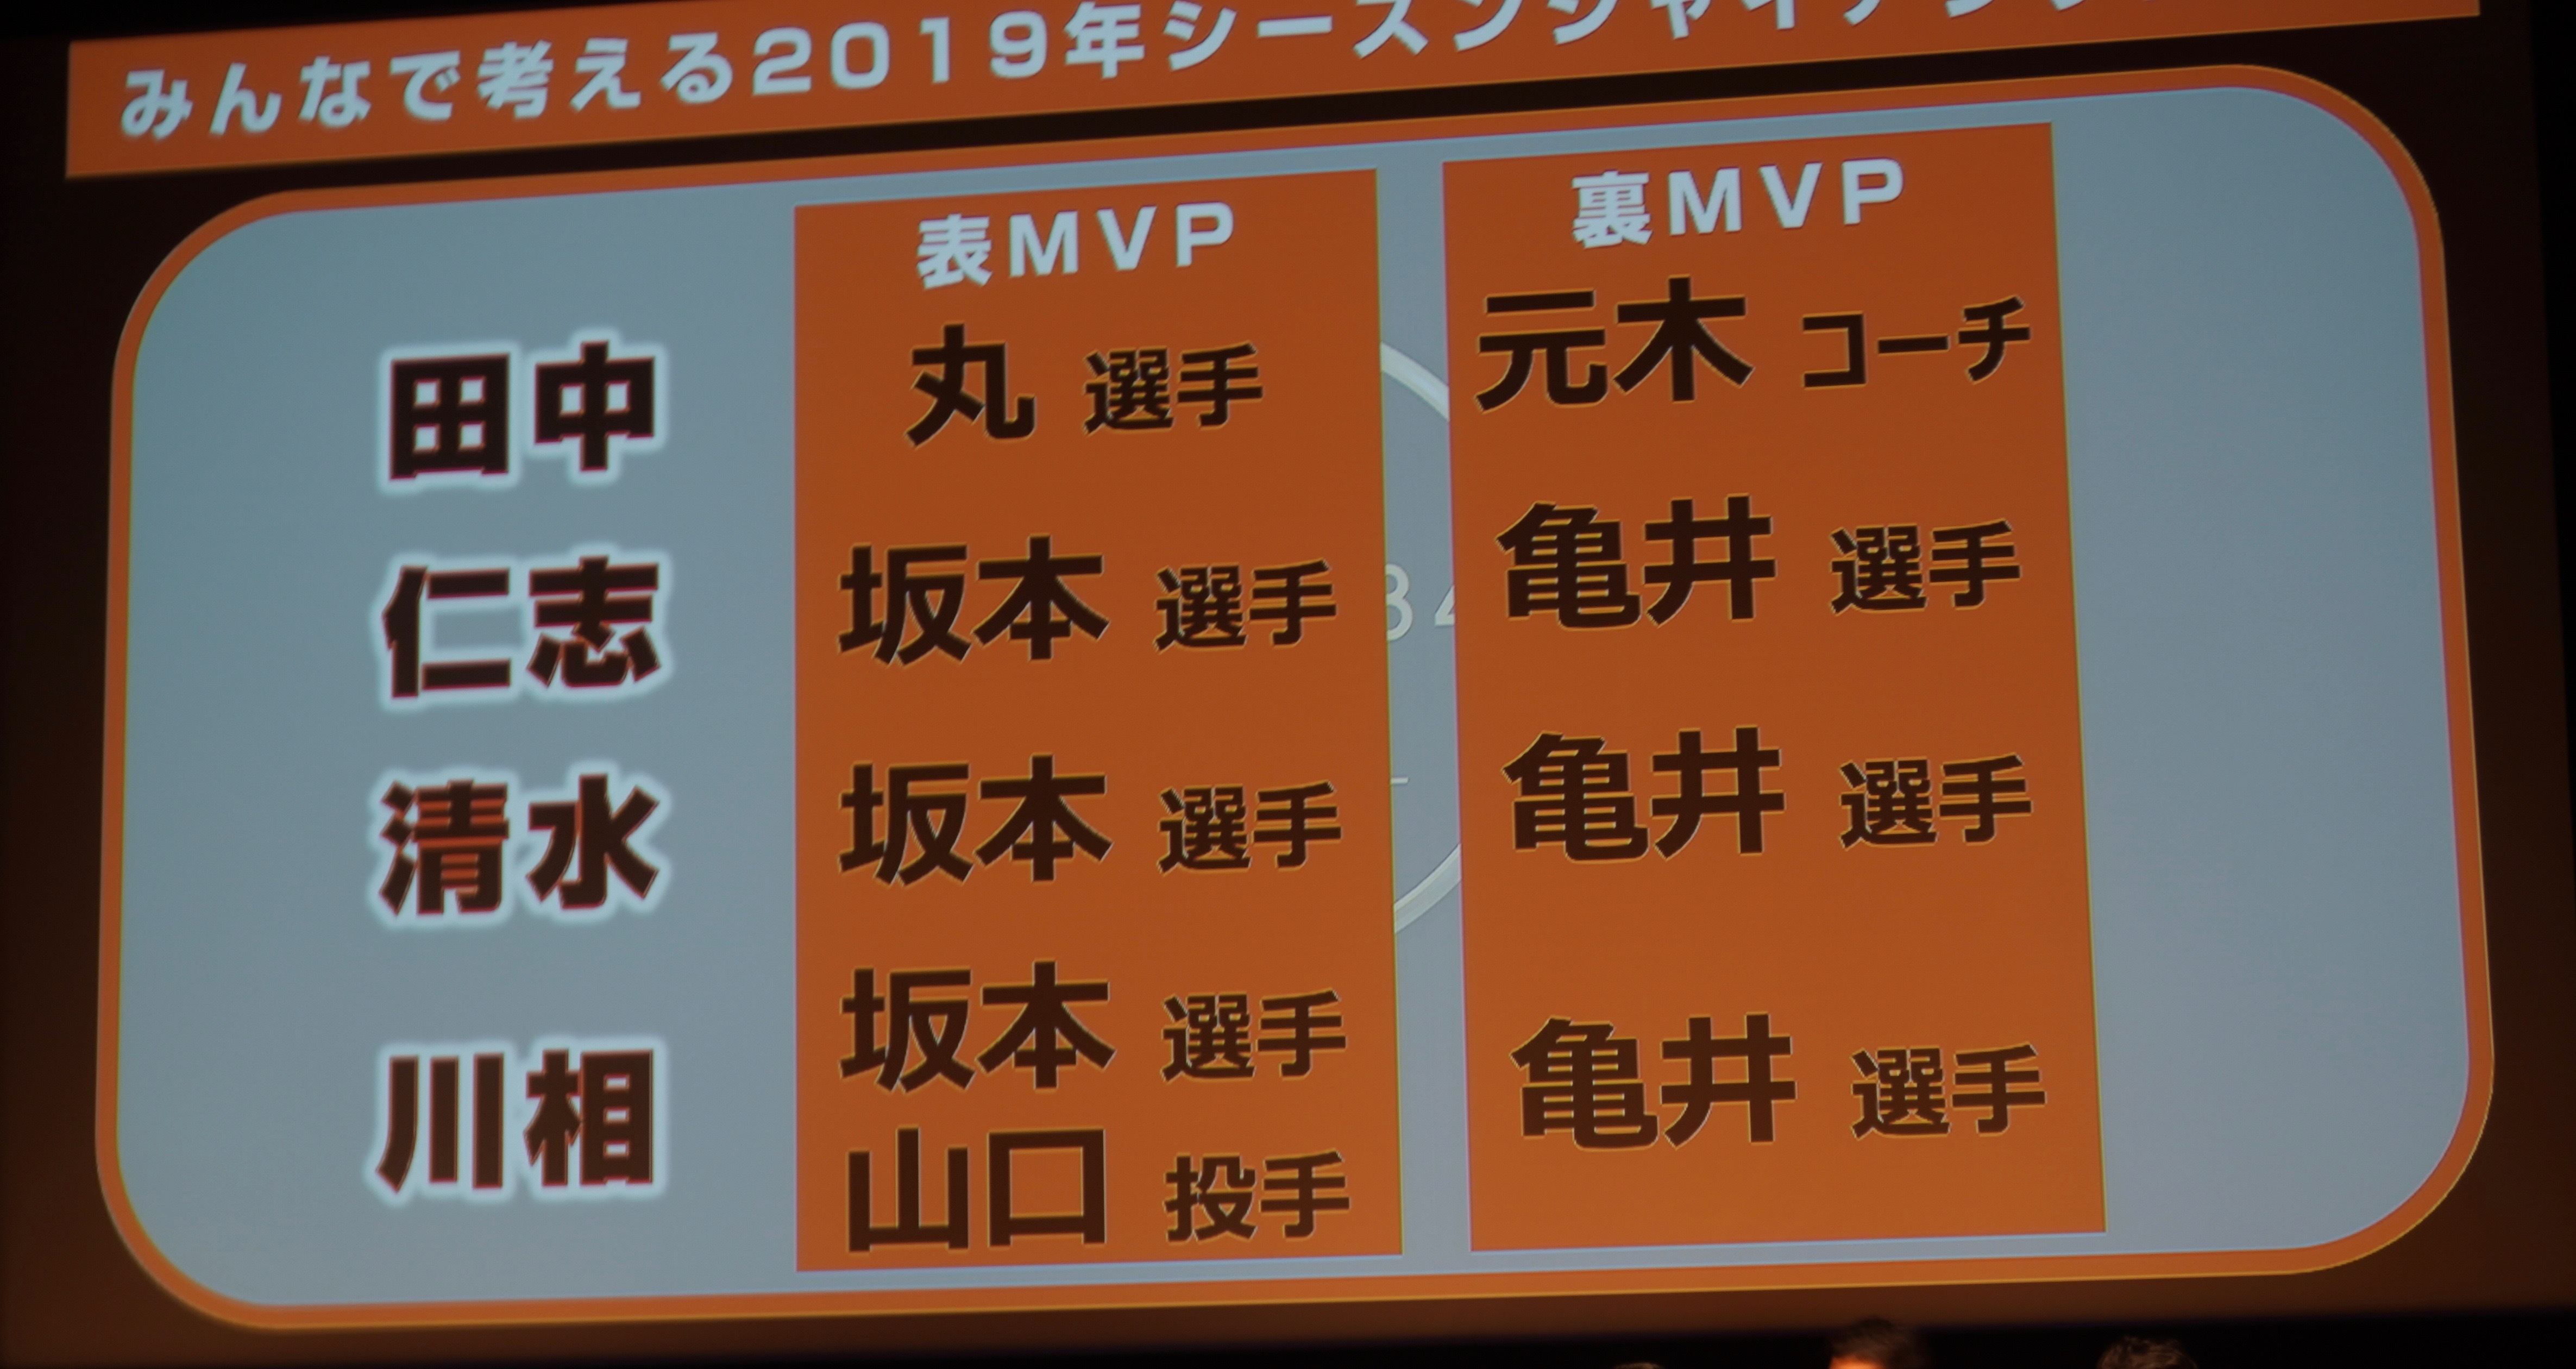 ゲスト4人がそれぞれ考える2019シーズンの表と裏MVP